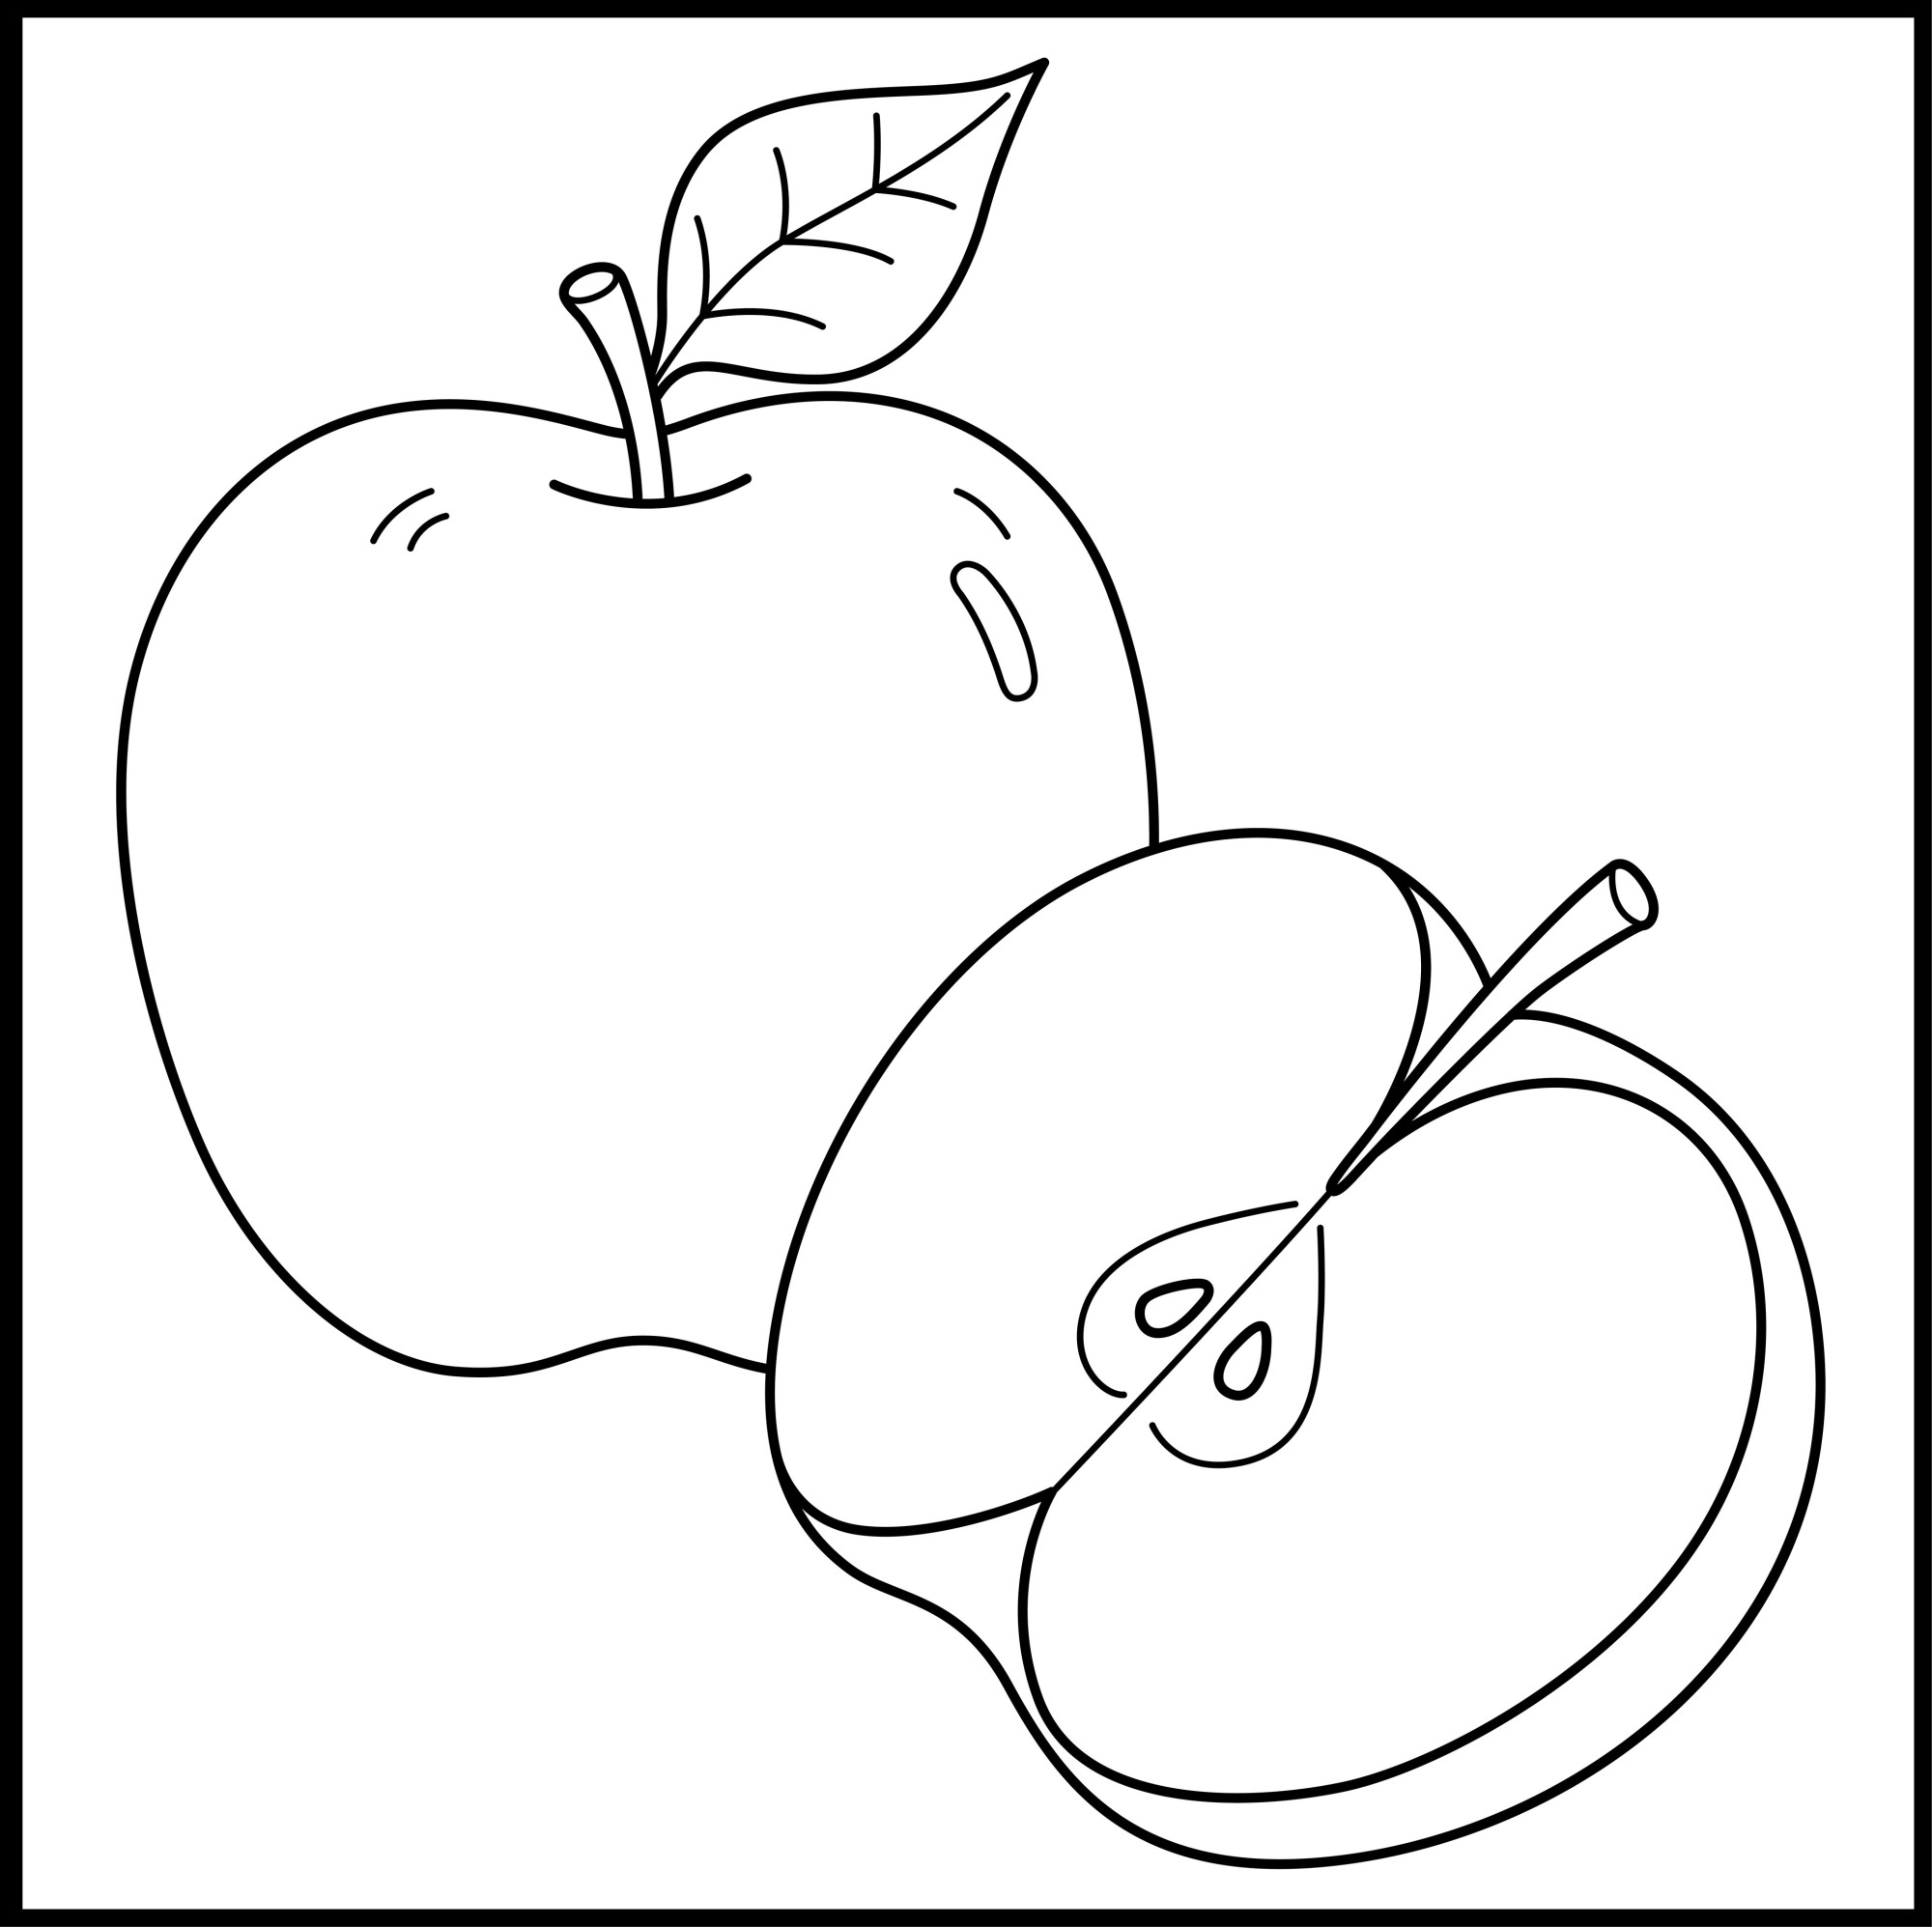 Раскраска для детей: питательное яблоко с половинкой